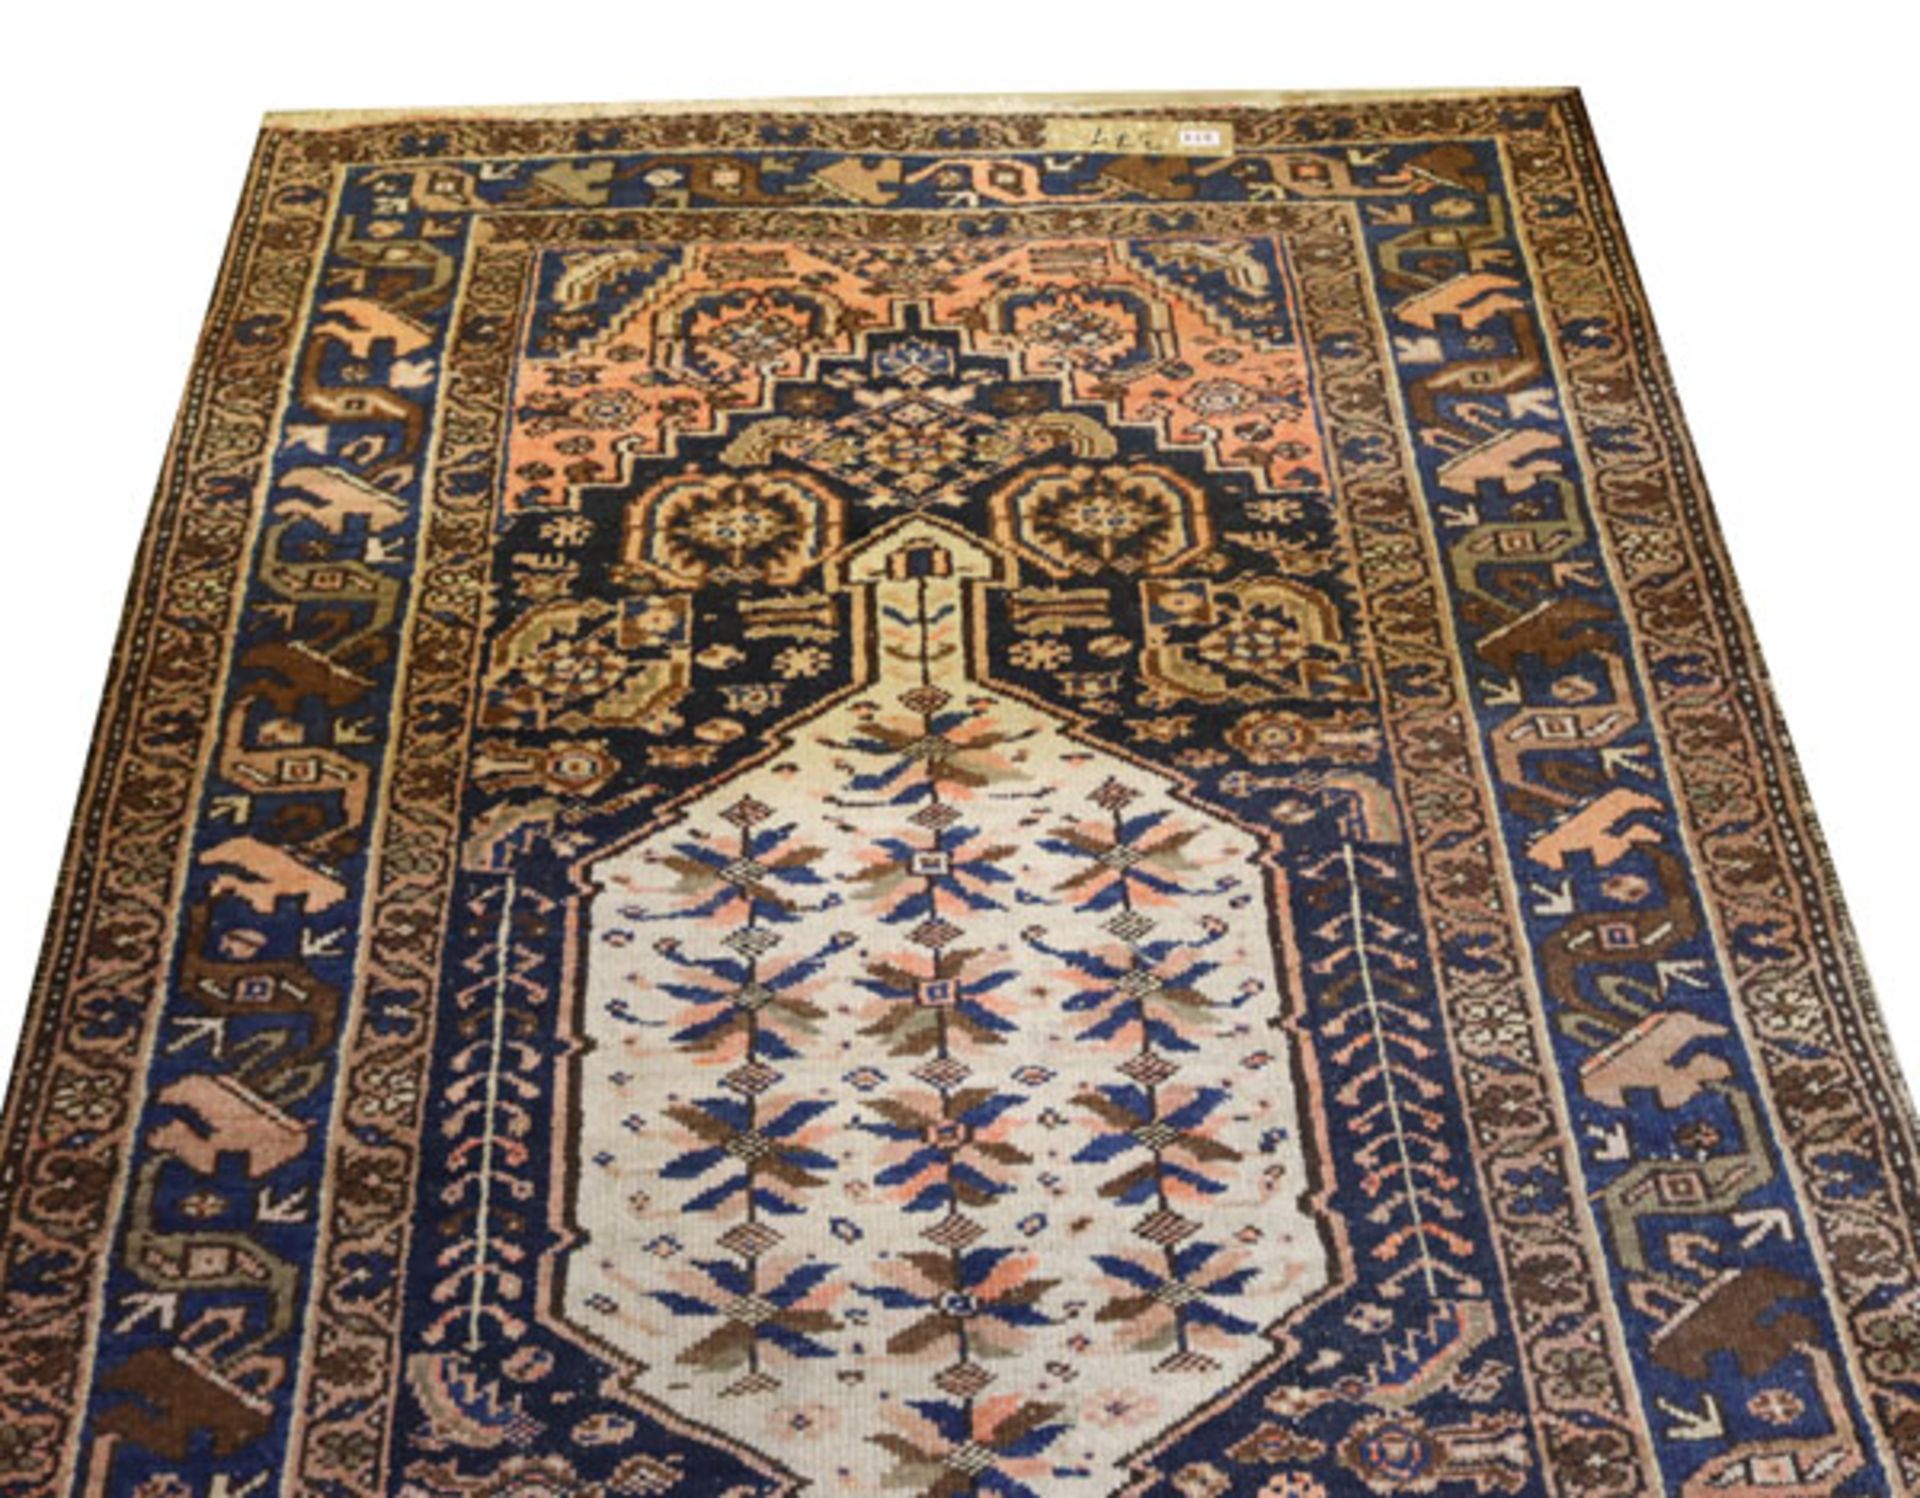 Teppich, Heriz, blau/bleige/rot, Gebrauchsspuren, teils beschädigt, 188 cm x 130 cm